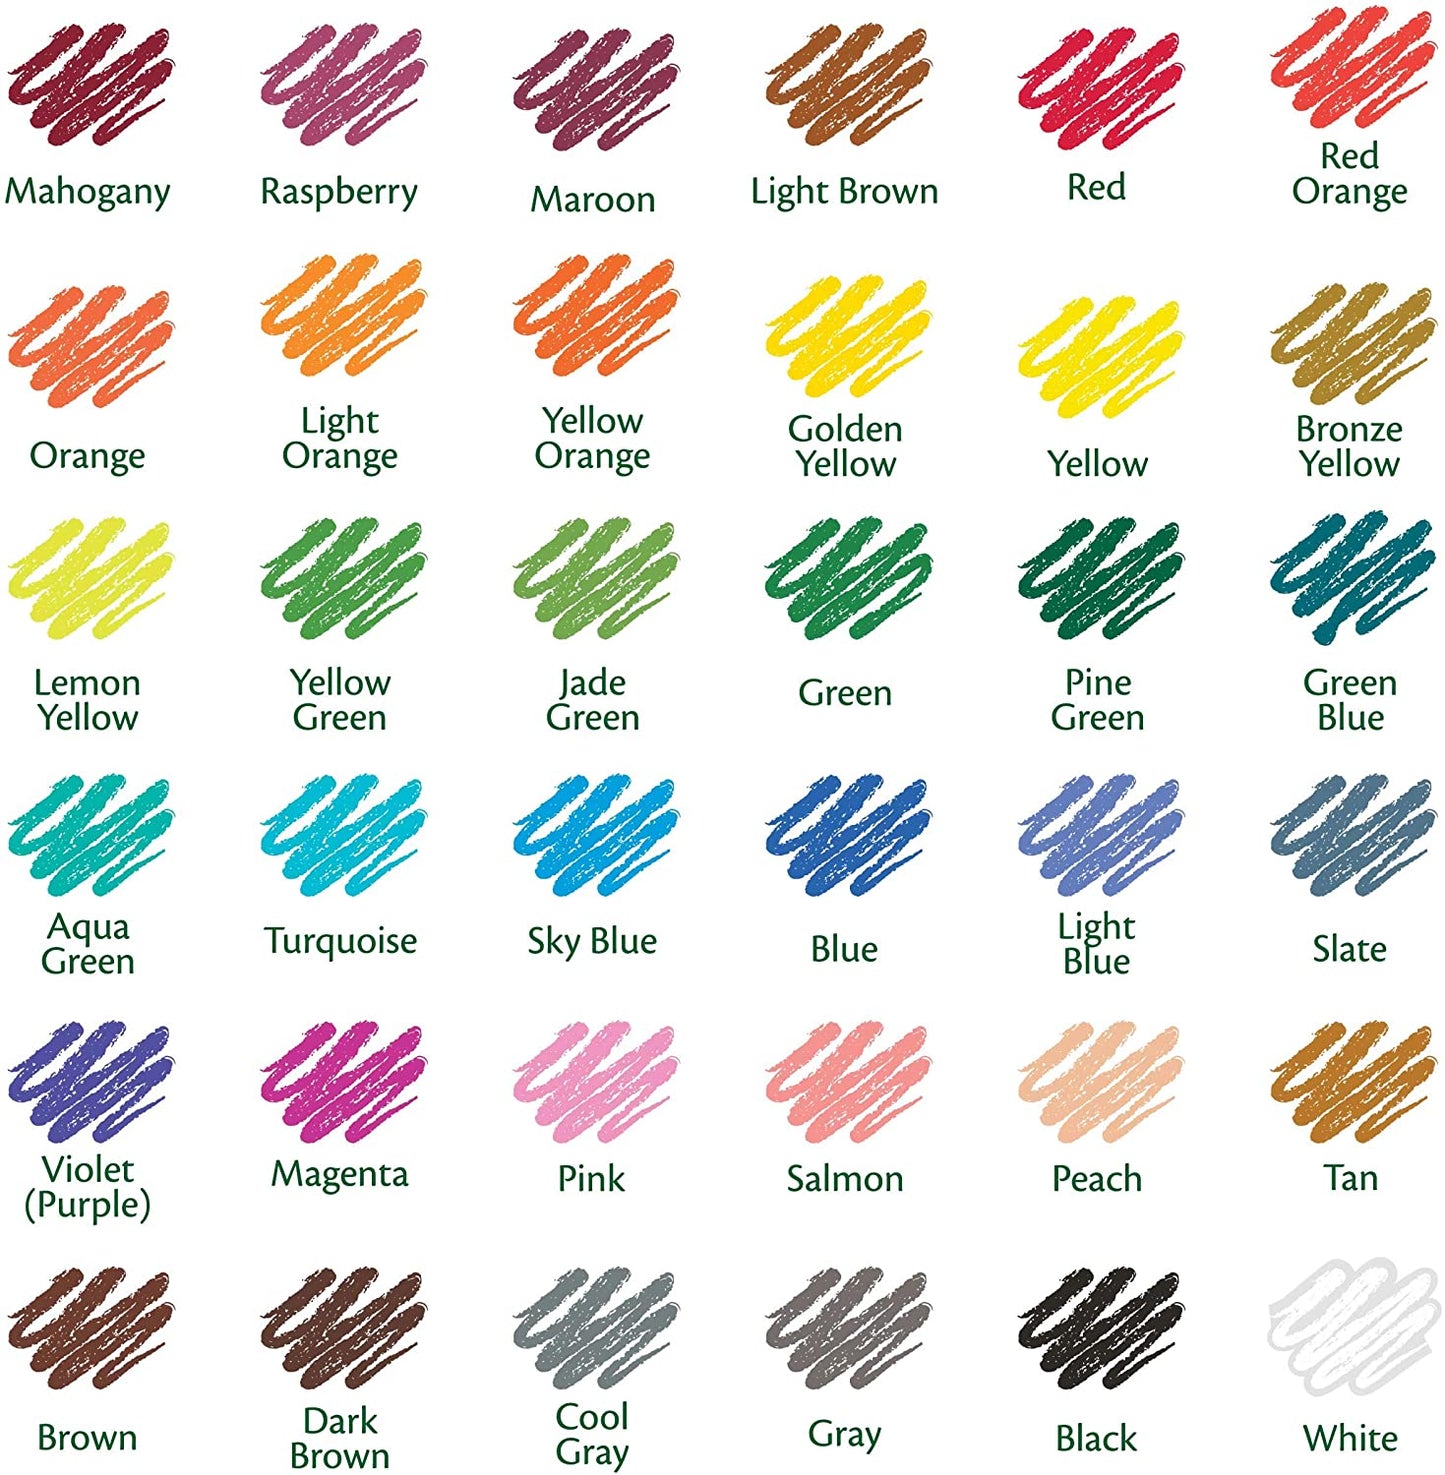 Crayola - Colored 36 Count - Pencil Set